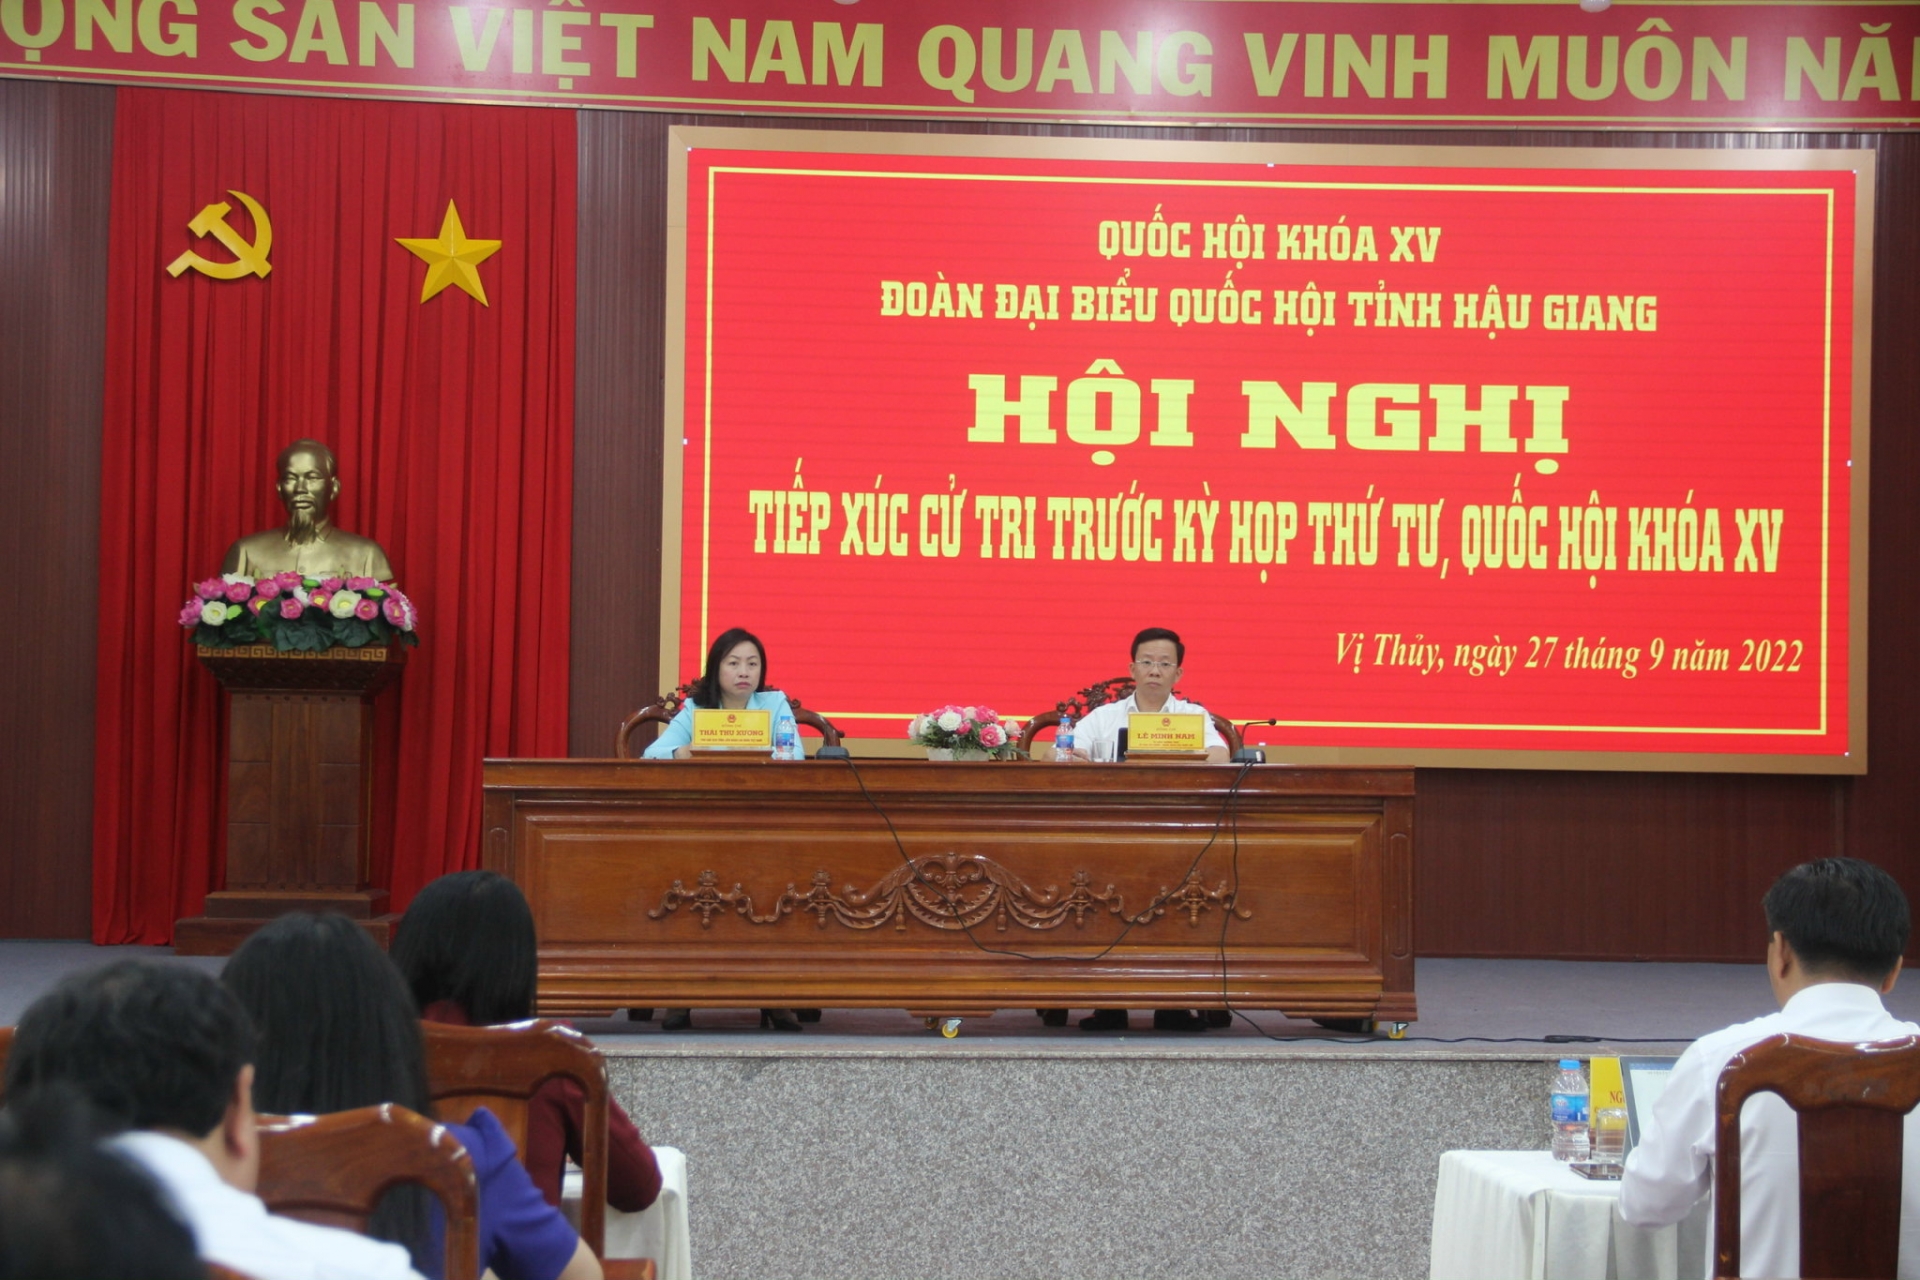 Đoàn đại biểu Quốc hội tỉnh tiếp xúc cử tri huyện Vị Thủy